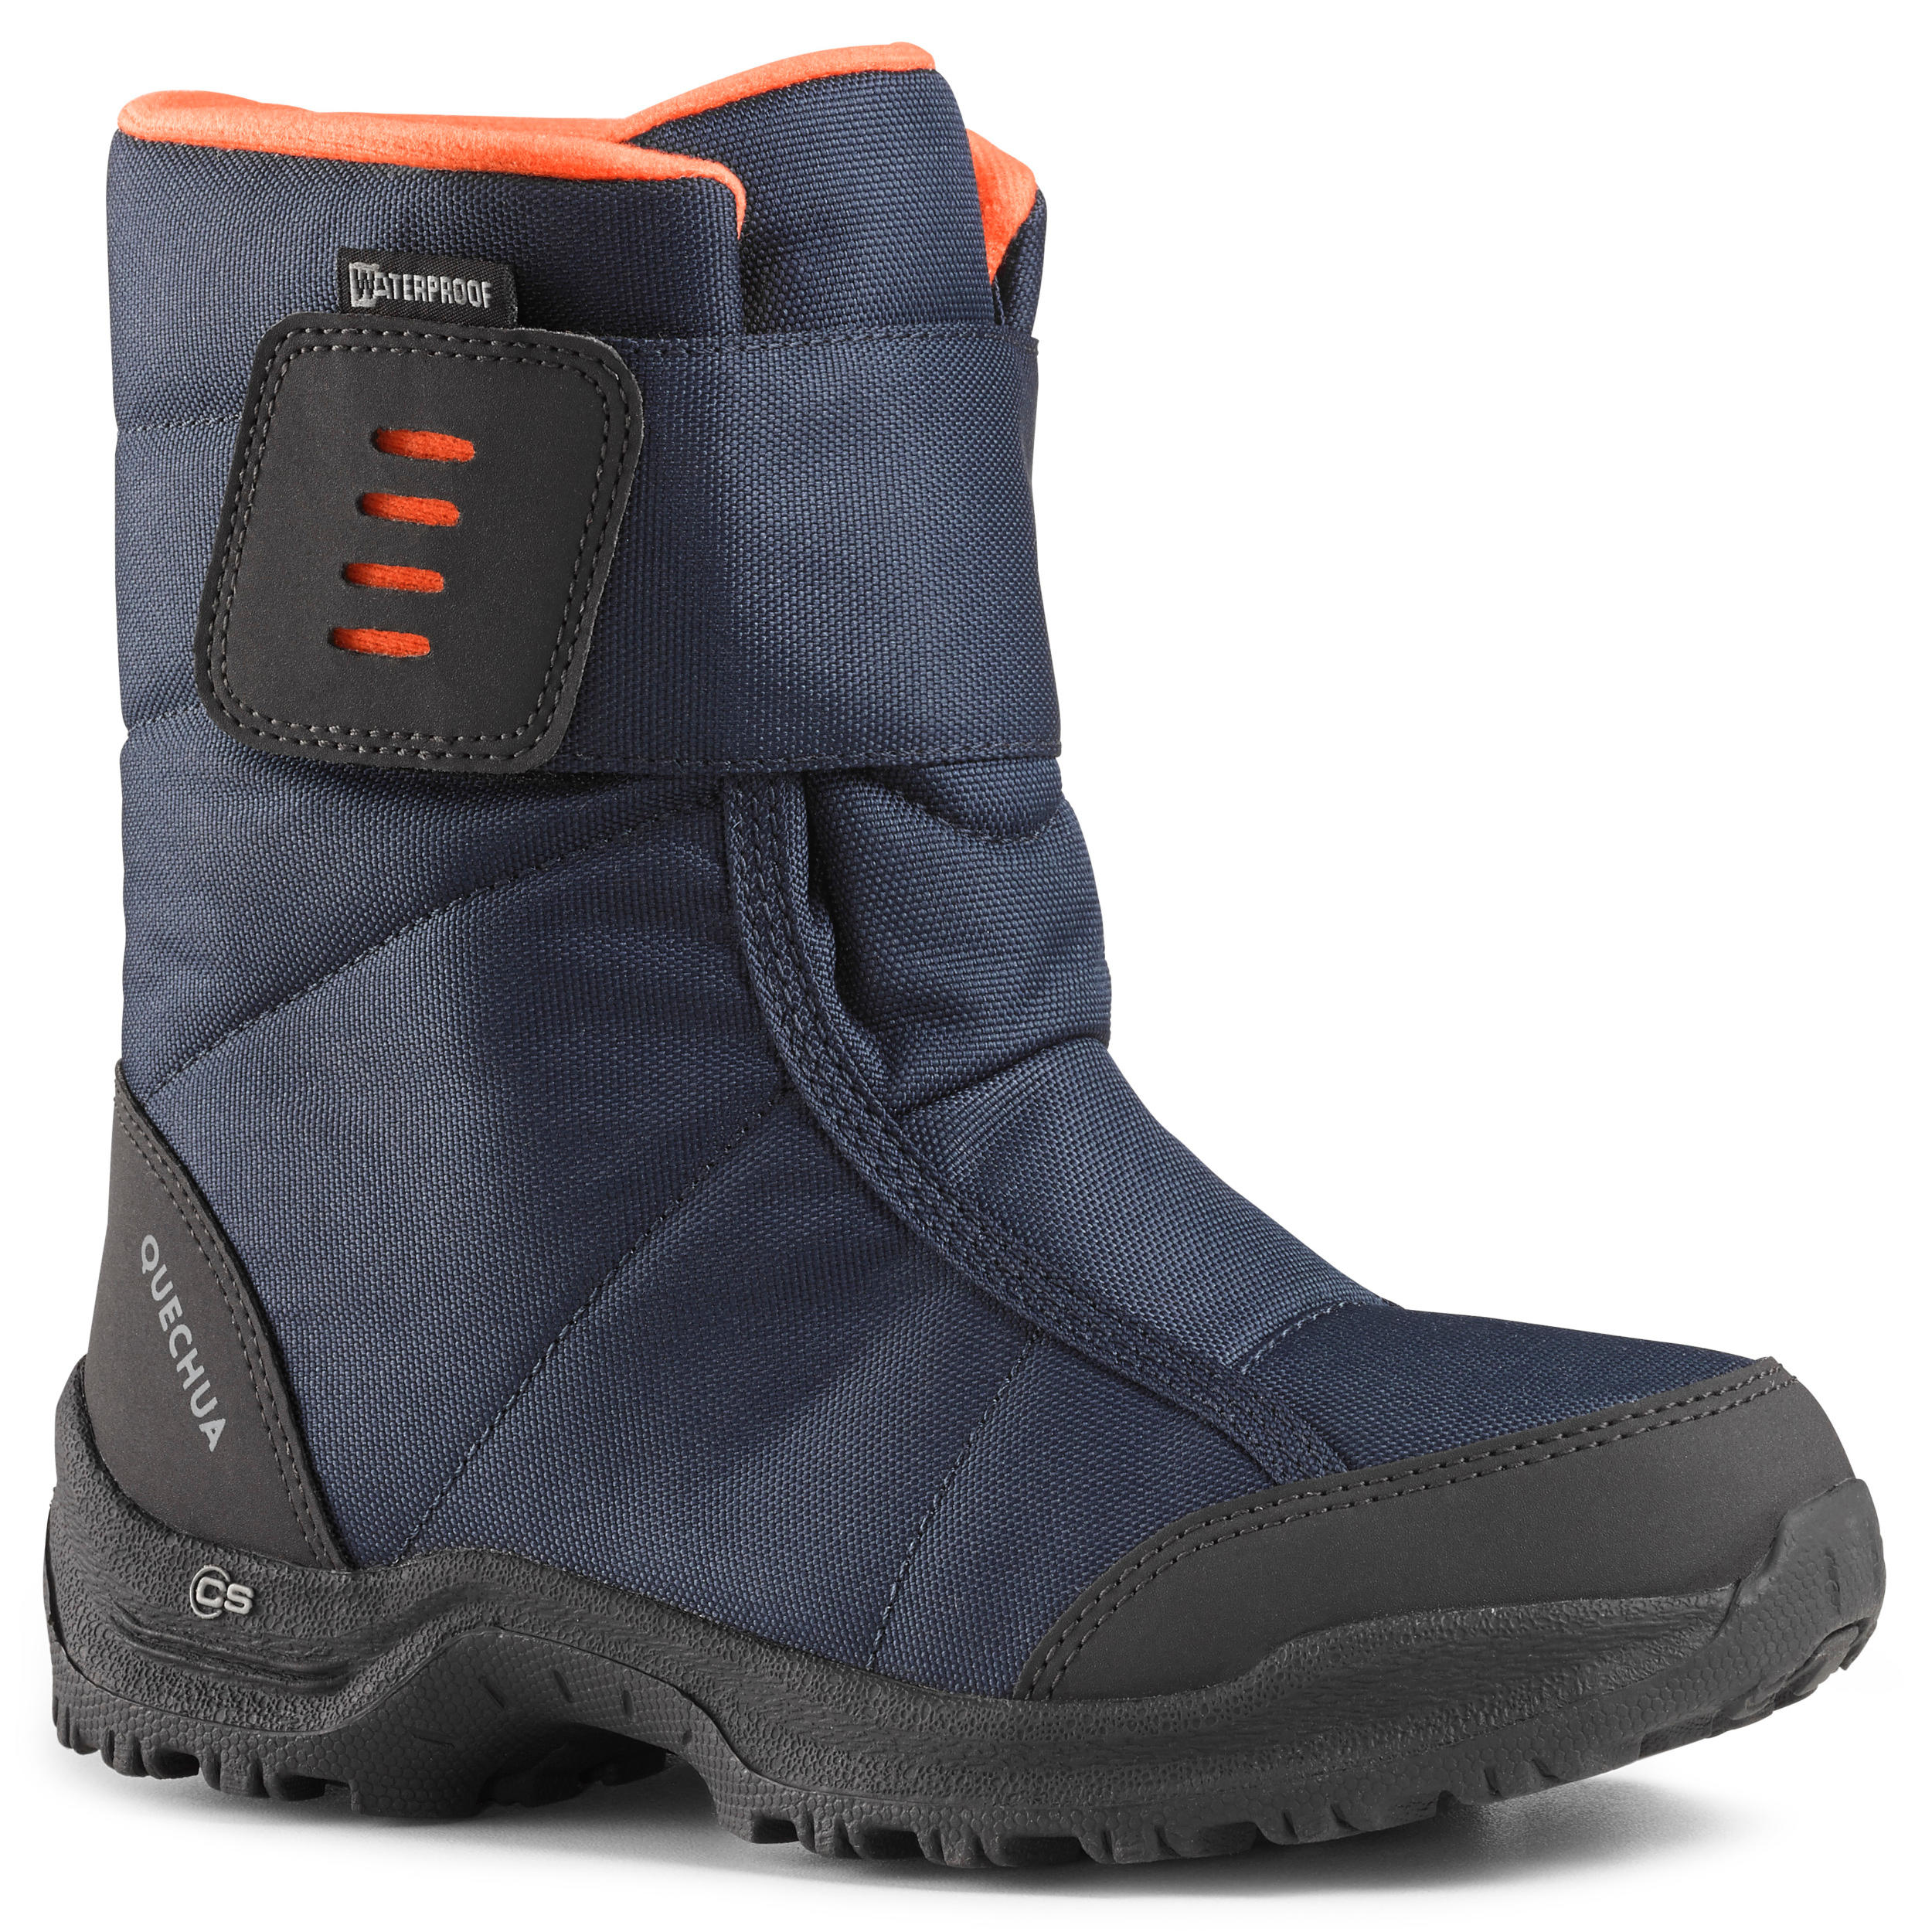 SH100 X-Warm JR Snow Hiking Boots 